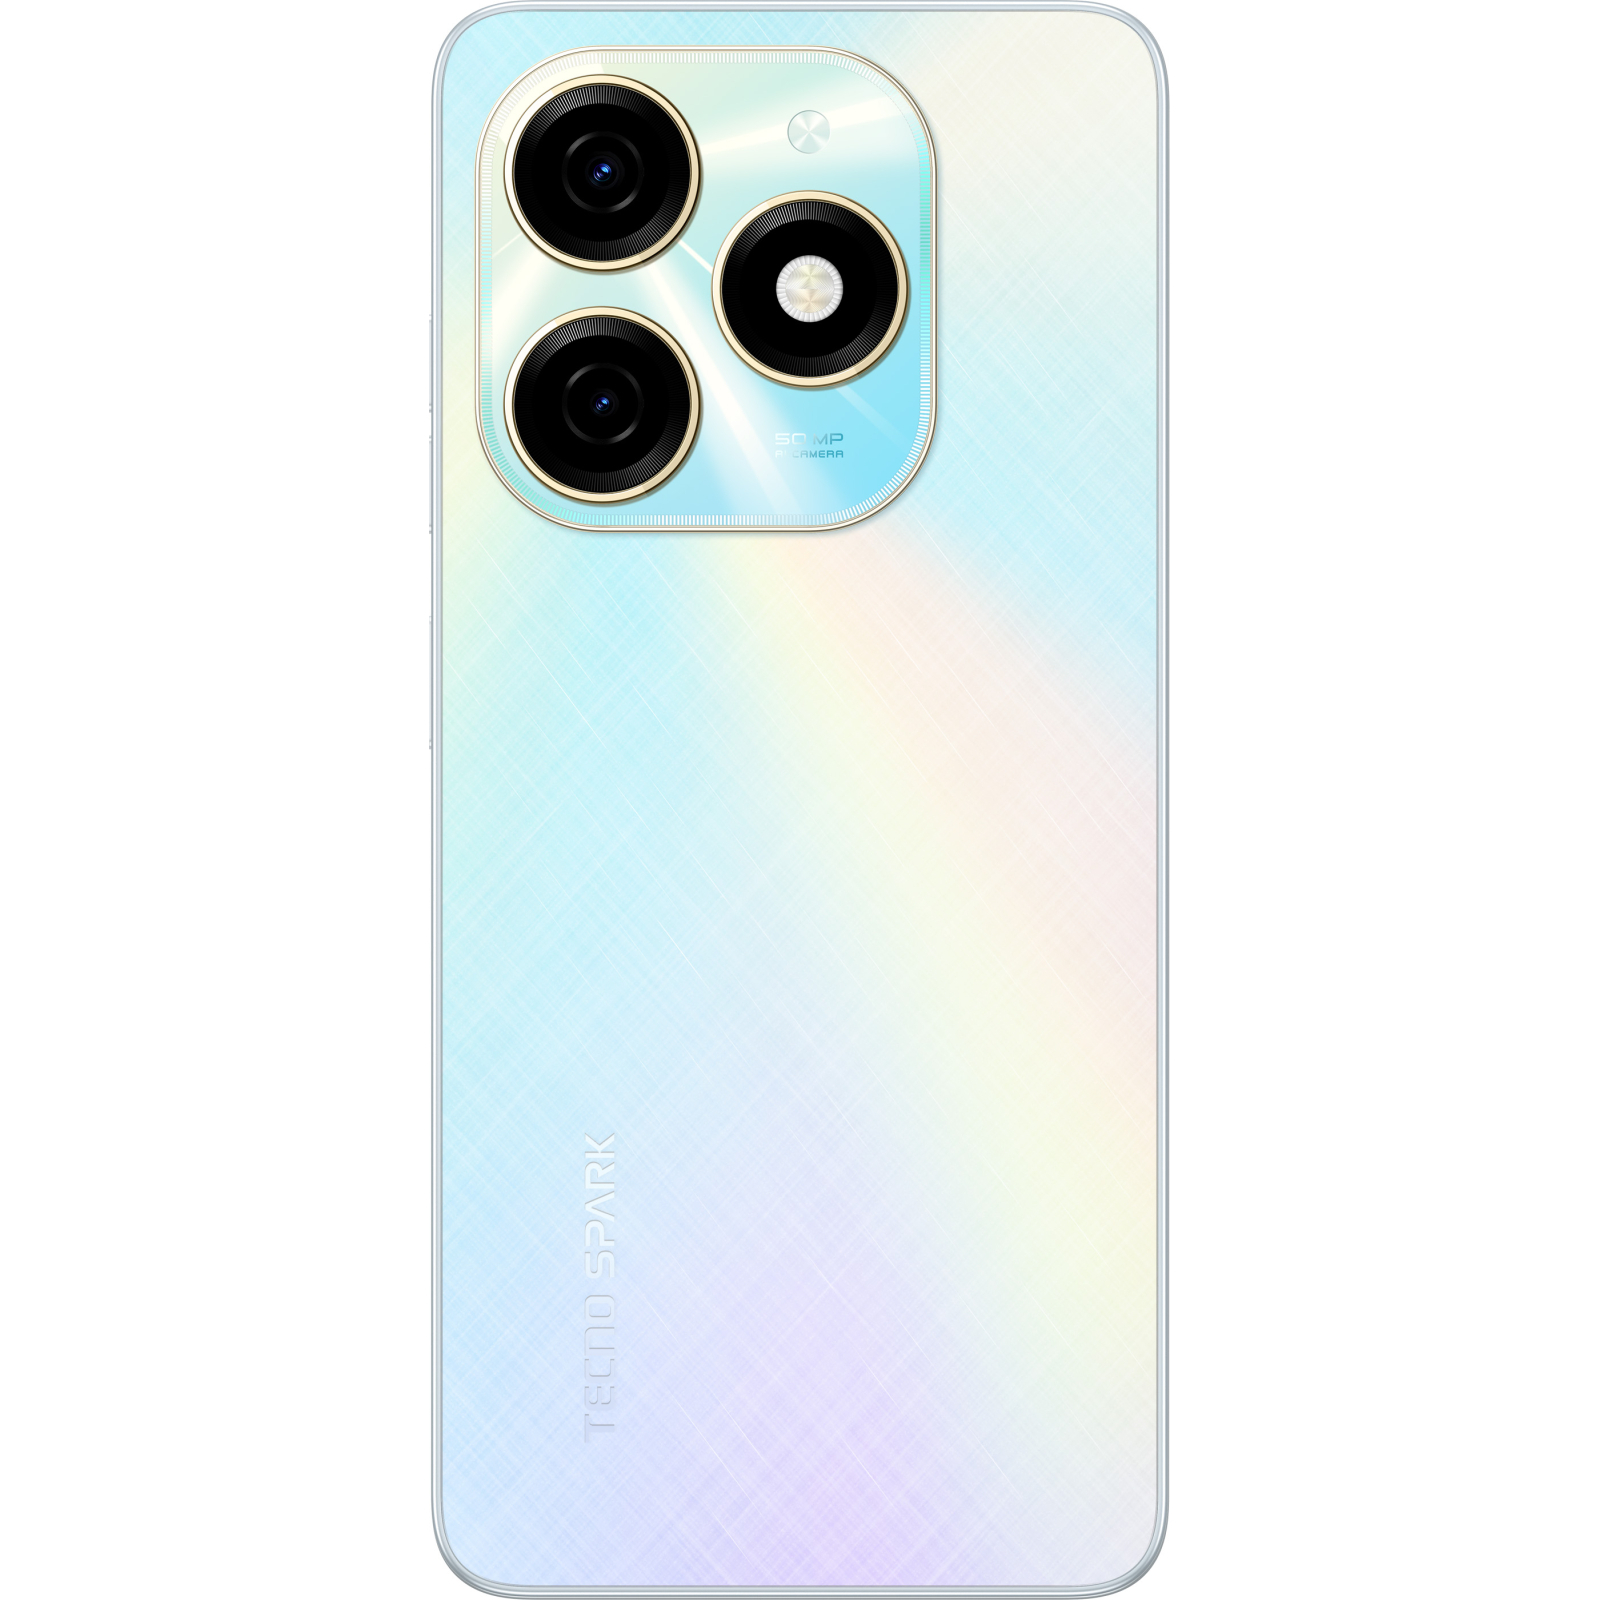 Мобильный телефон Tecno Spark 20 8/128Gb Neon Gold (4894947013560) изображение 3